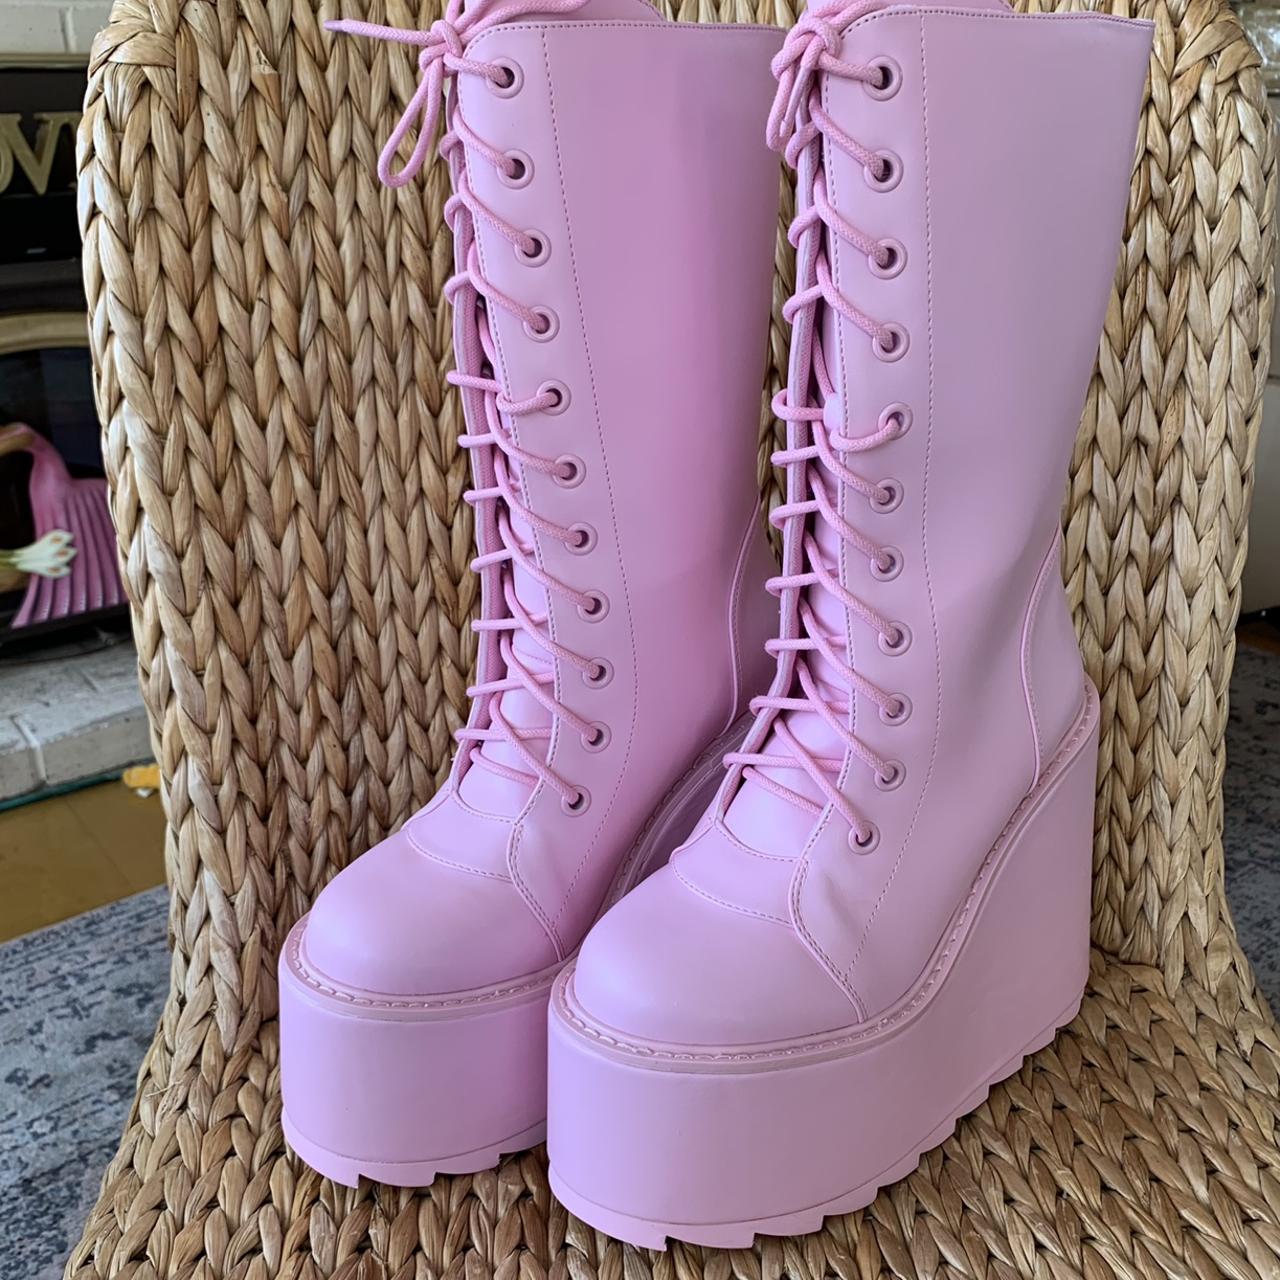 New YRU Pink Dune booties in pink Vegan Leather.... - Depop